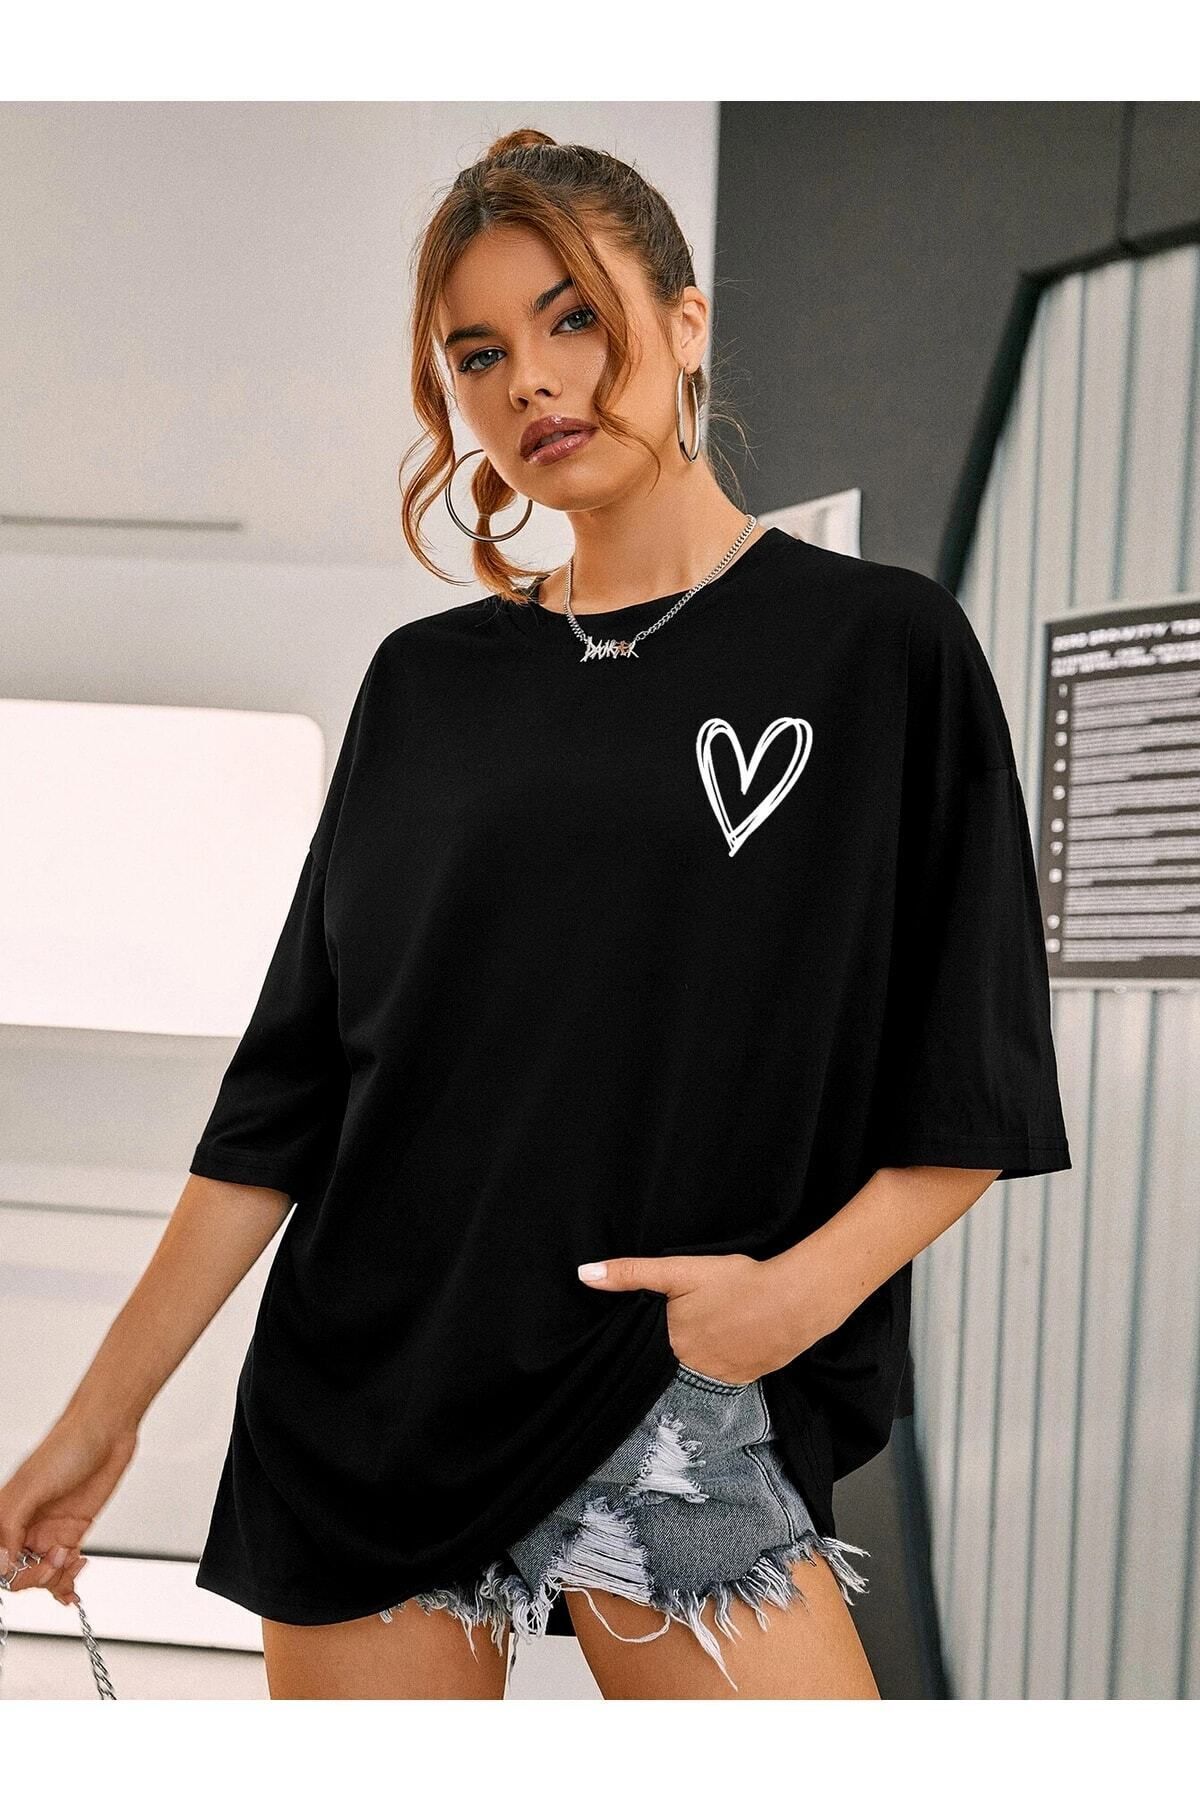 DAXİS Sportwear Company Kadın Küçük Kalp Baskılı Oversize Tshirt